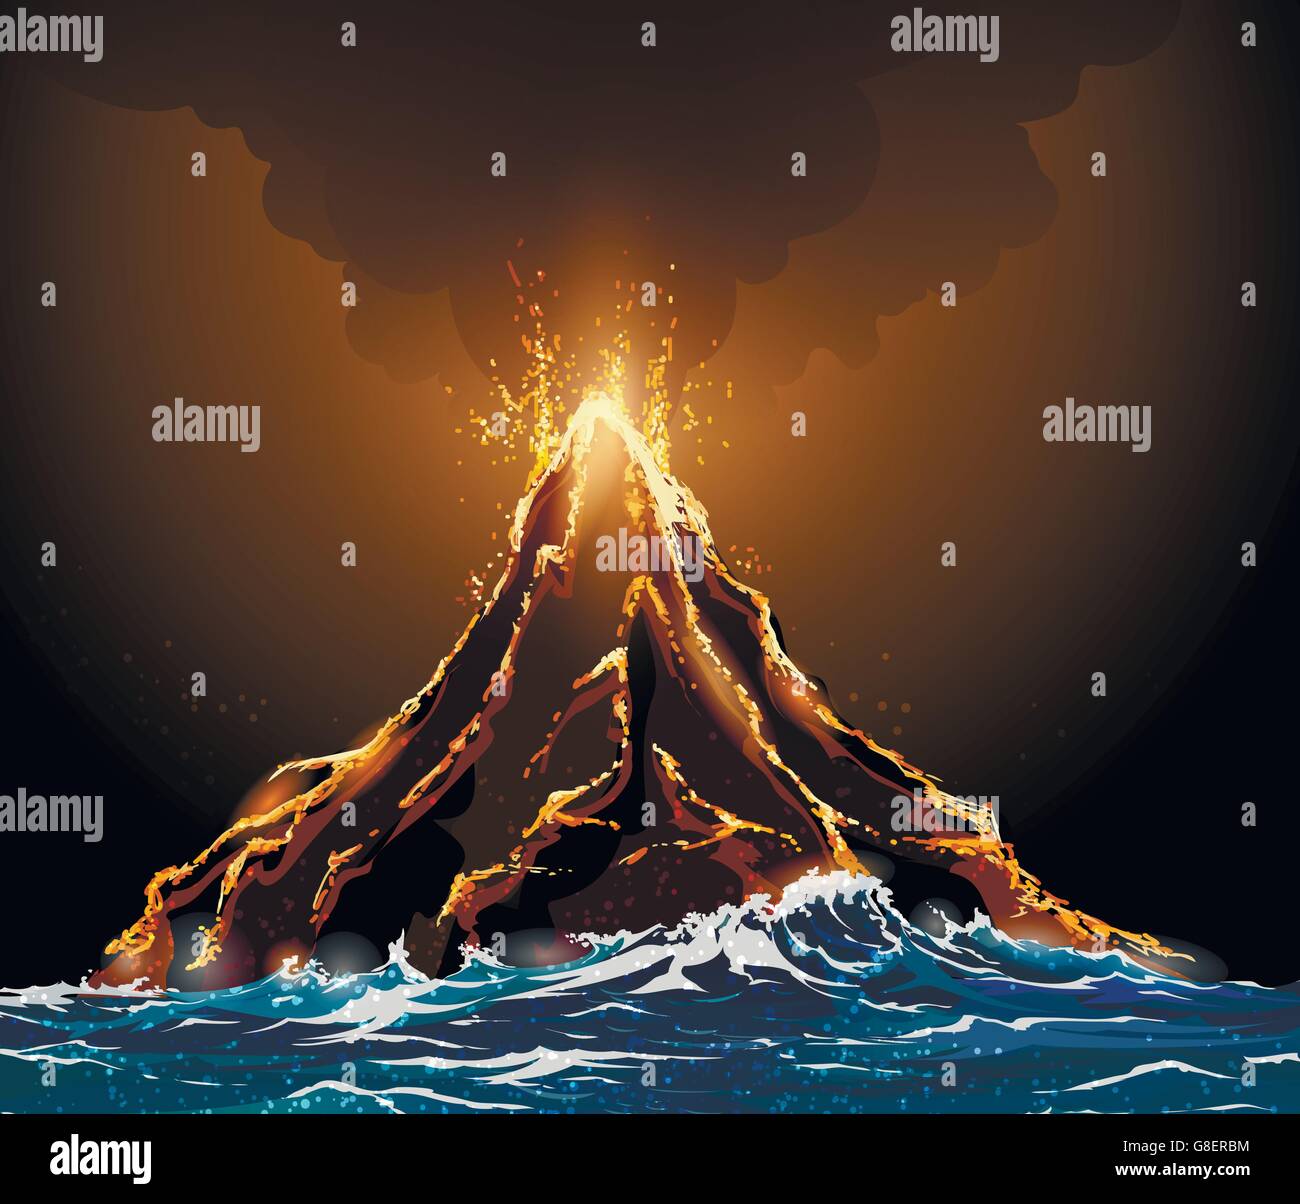 Volcan éruption island dans l'océan. Lave qui sort de la montagne contre pilier de fumée. Illustration de Vecteur